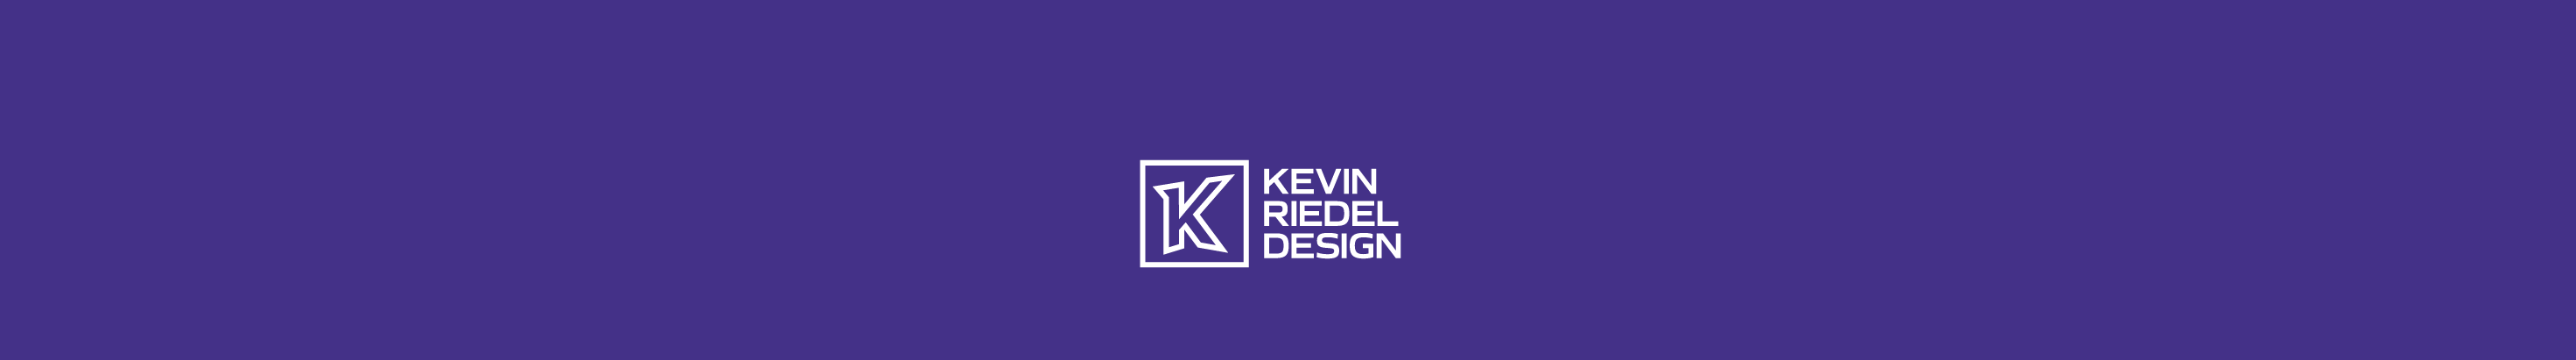 Kevin Riedel のプロファイルバナー